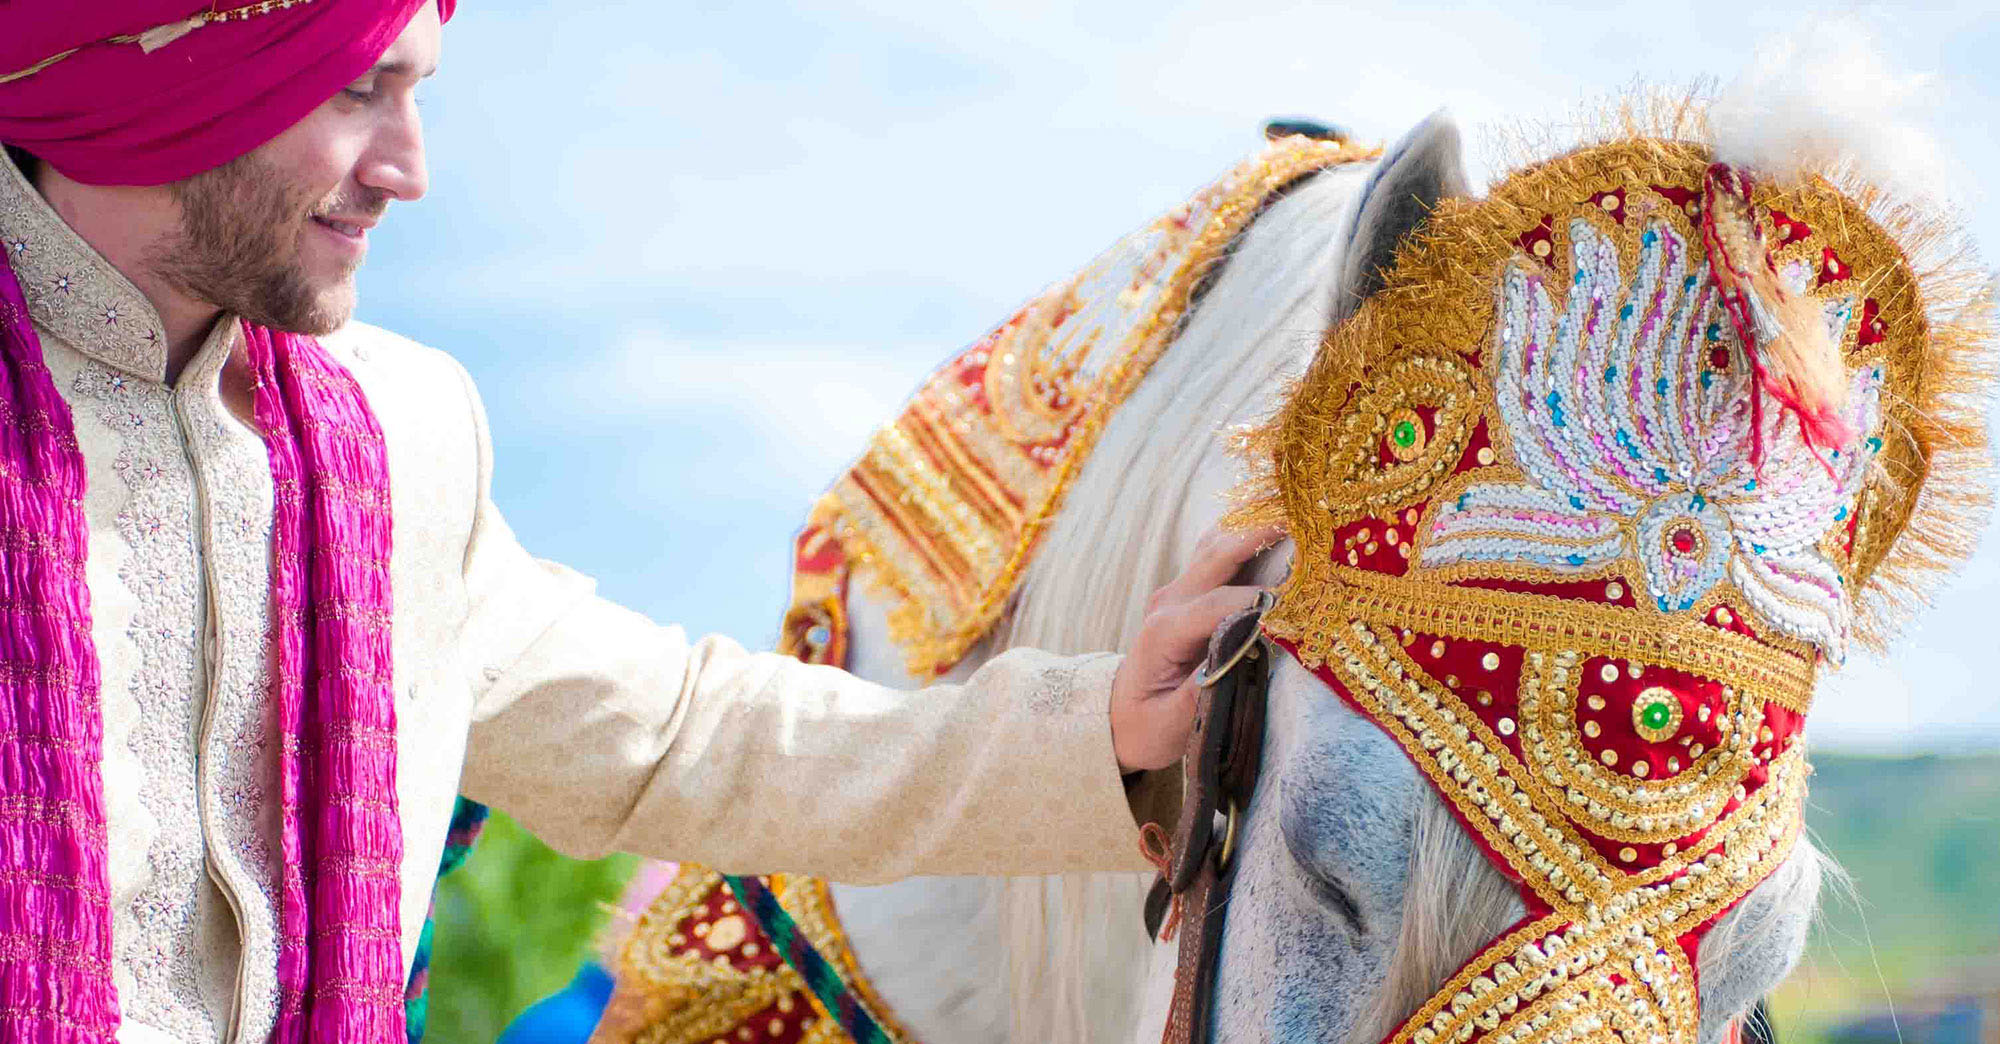 Raman & Kurt’s San Jose, CA Indian Wedding featured slider image